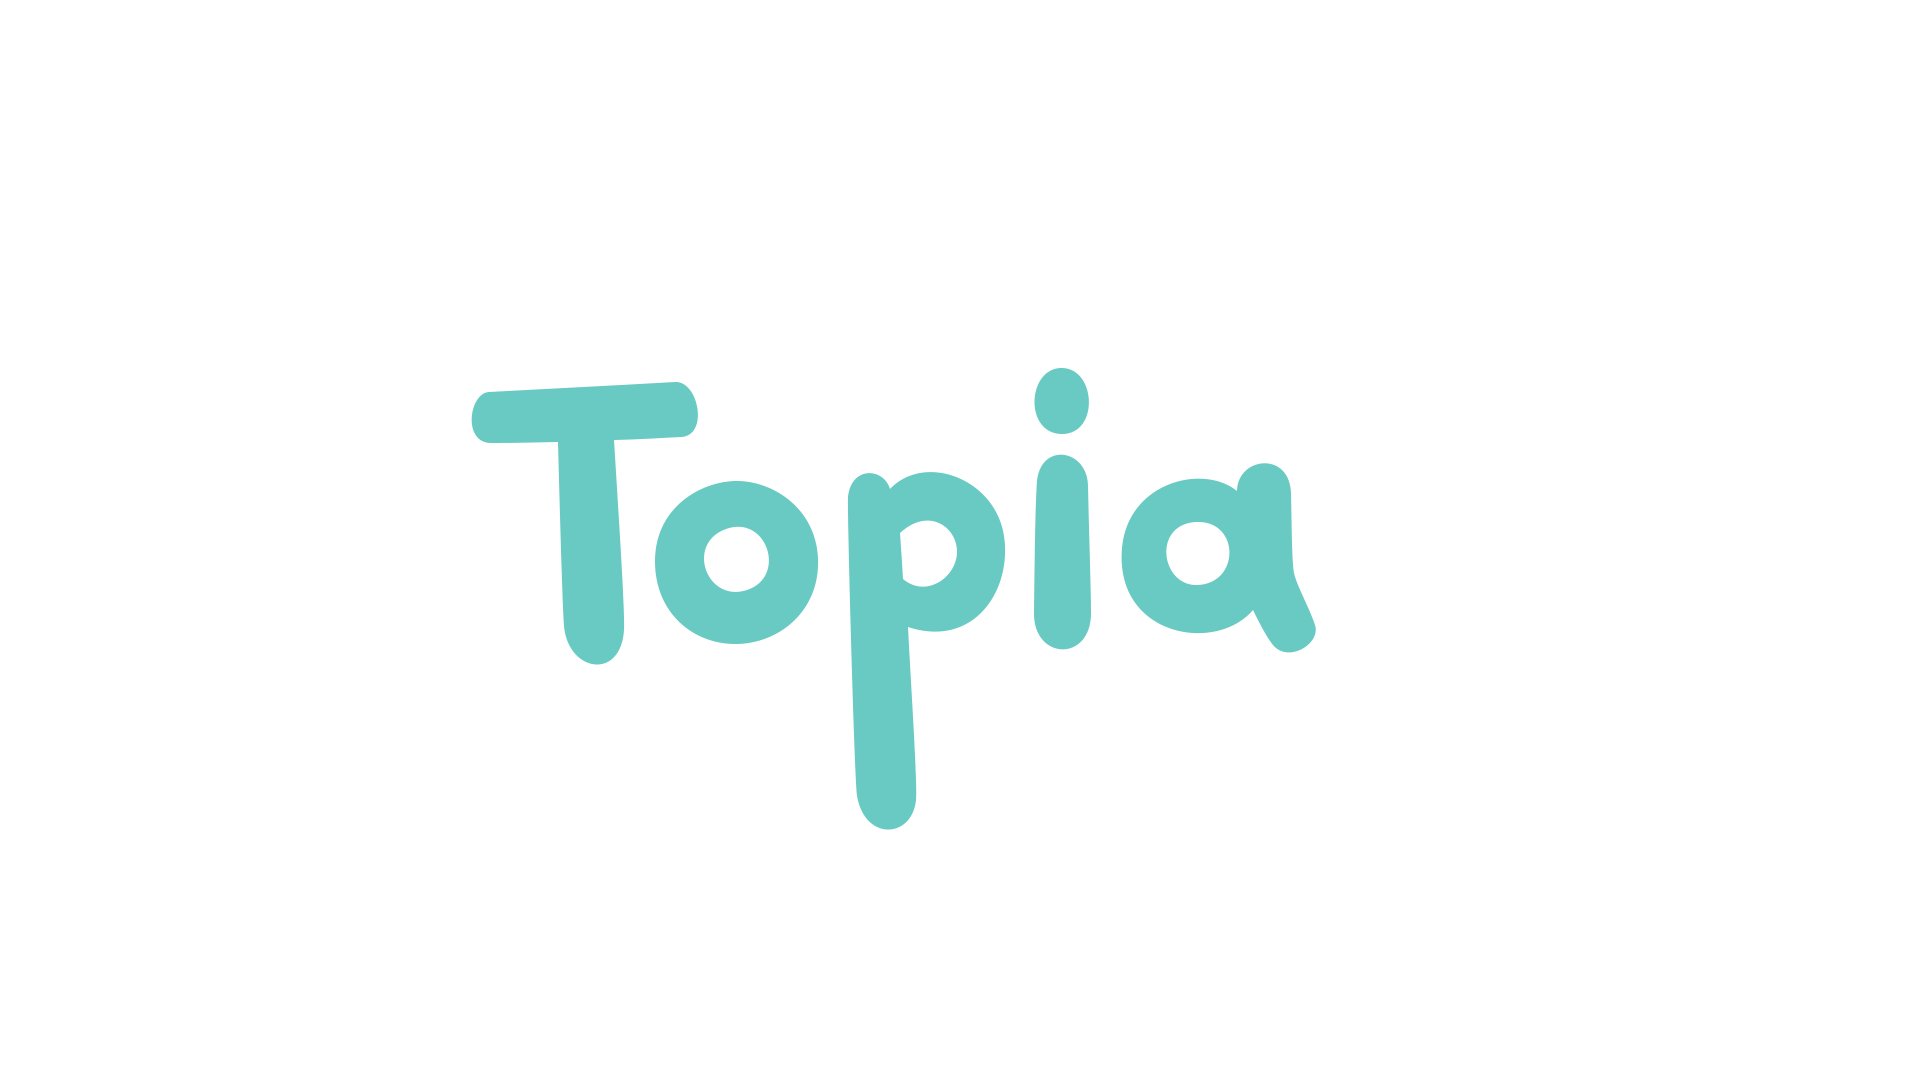 topia_teal_on_white (1)1